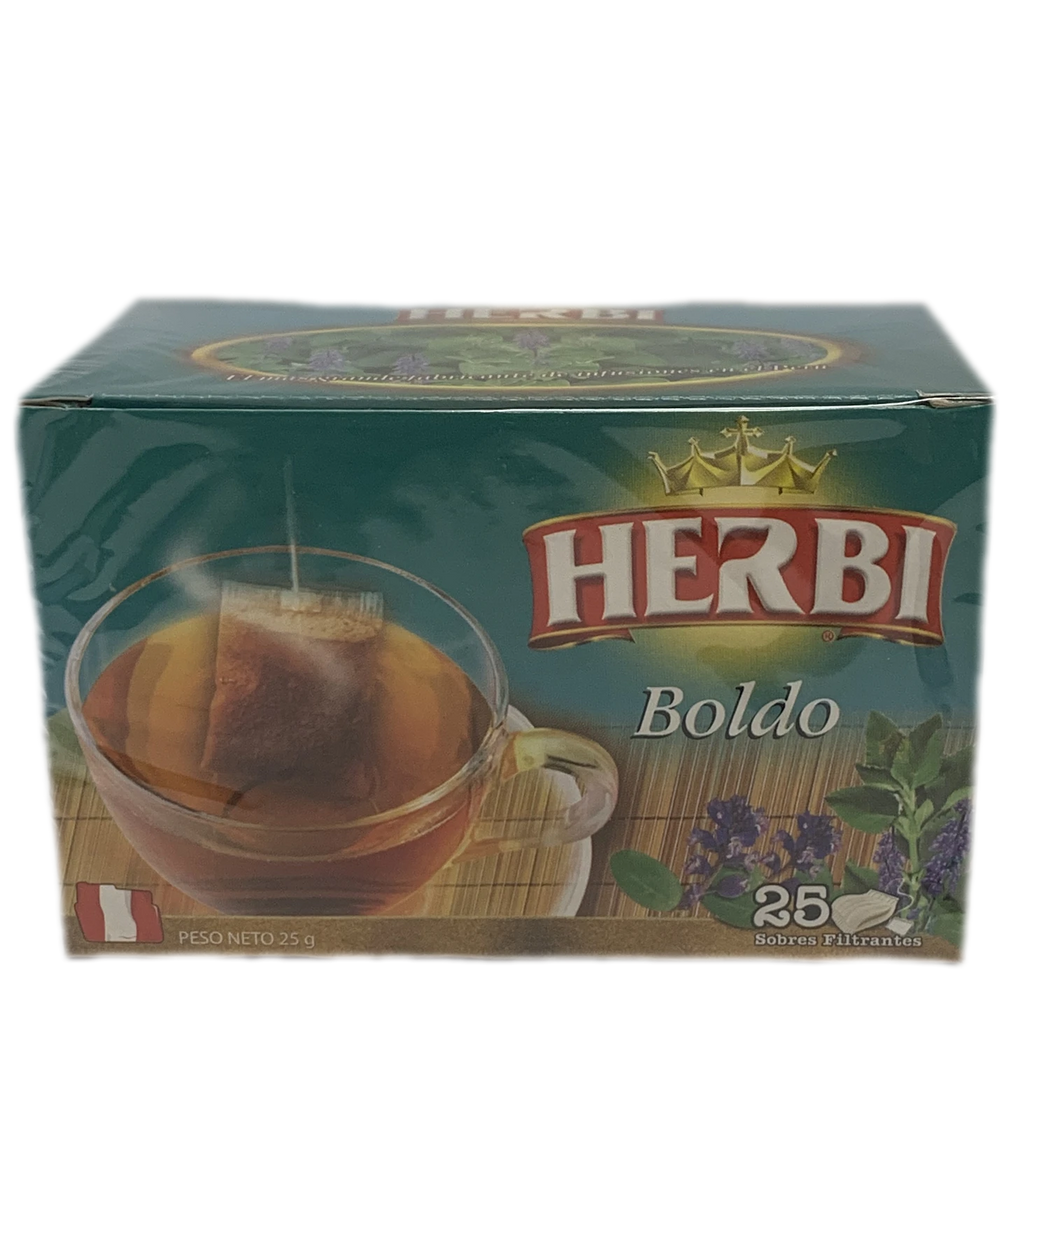 Herbi Boldo Tea